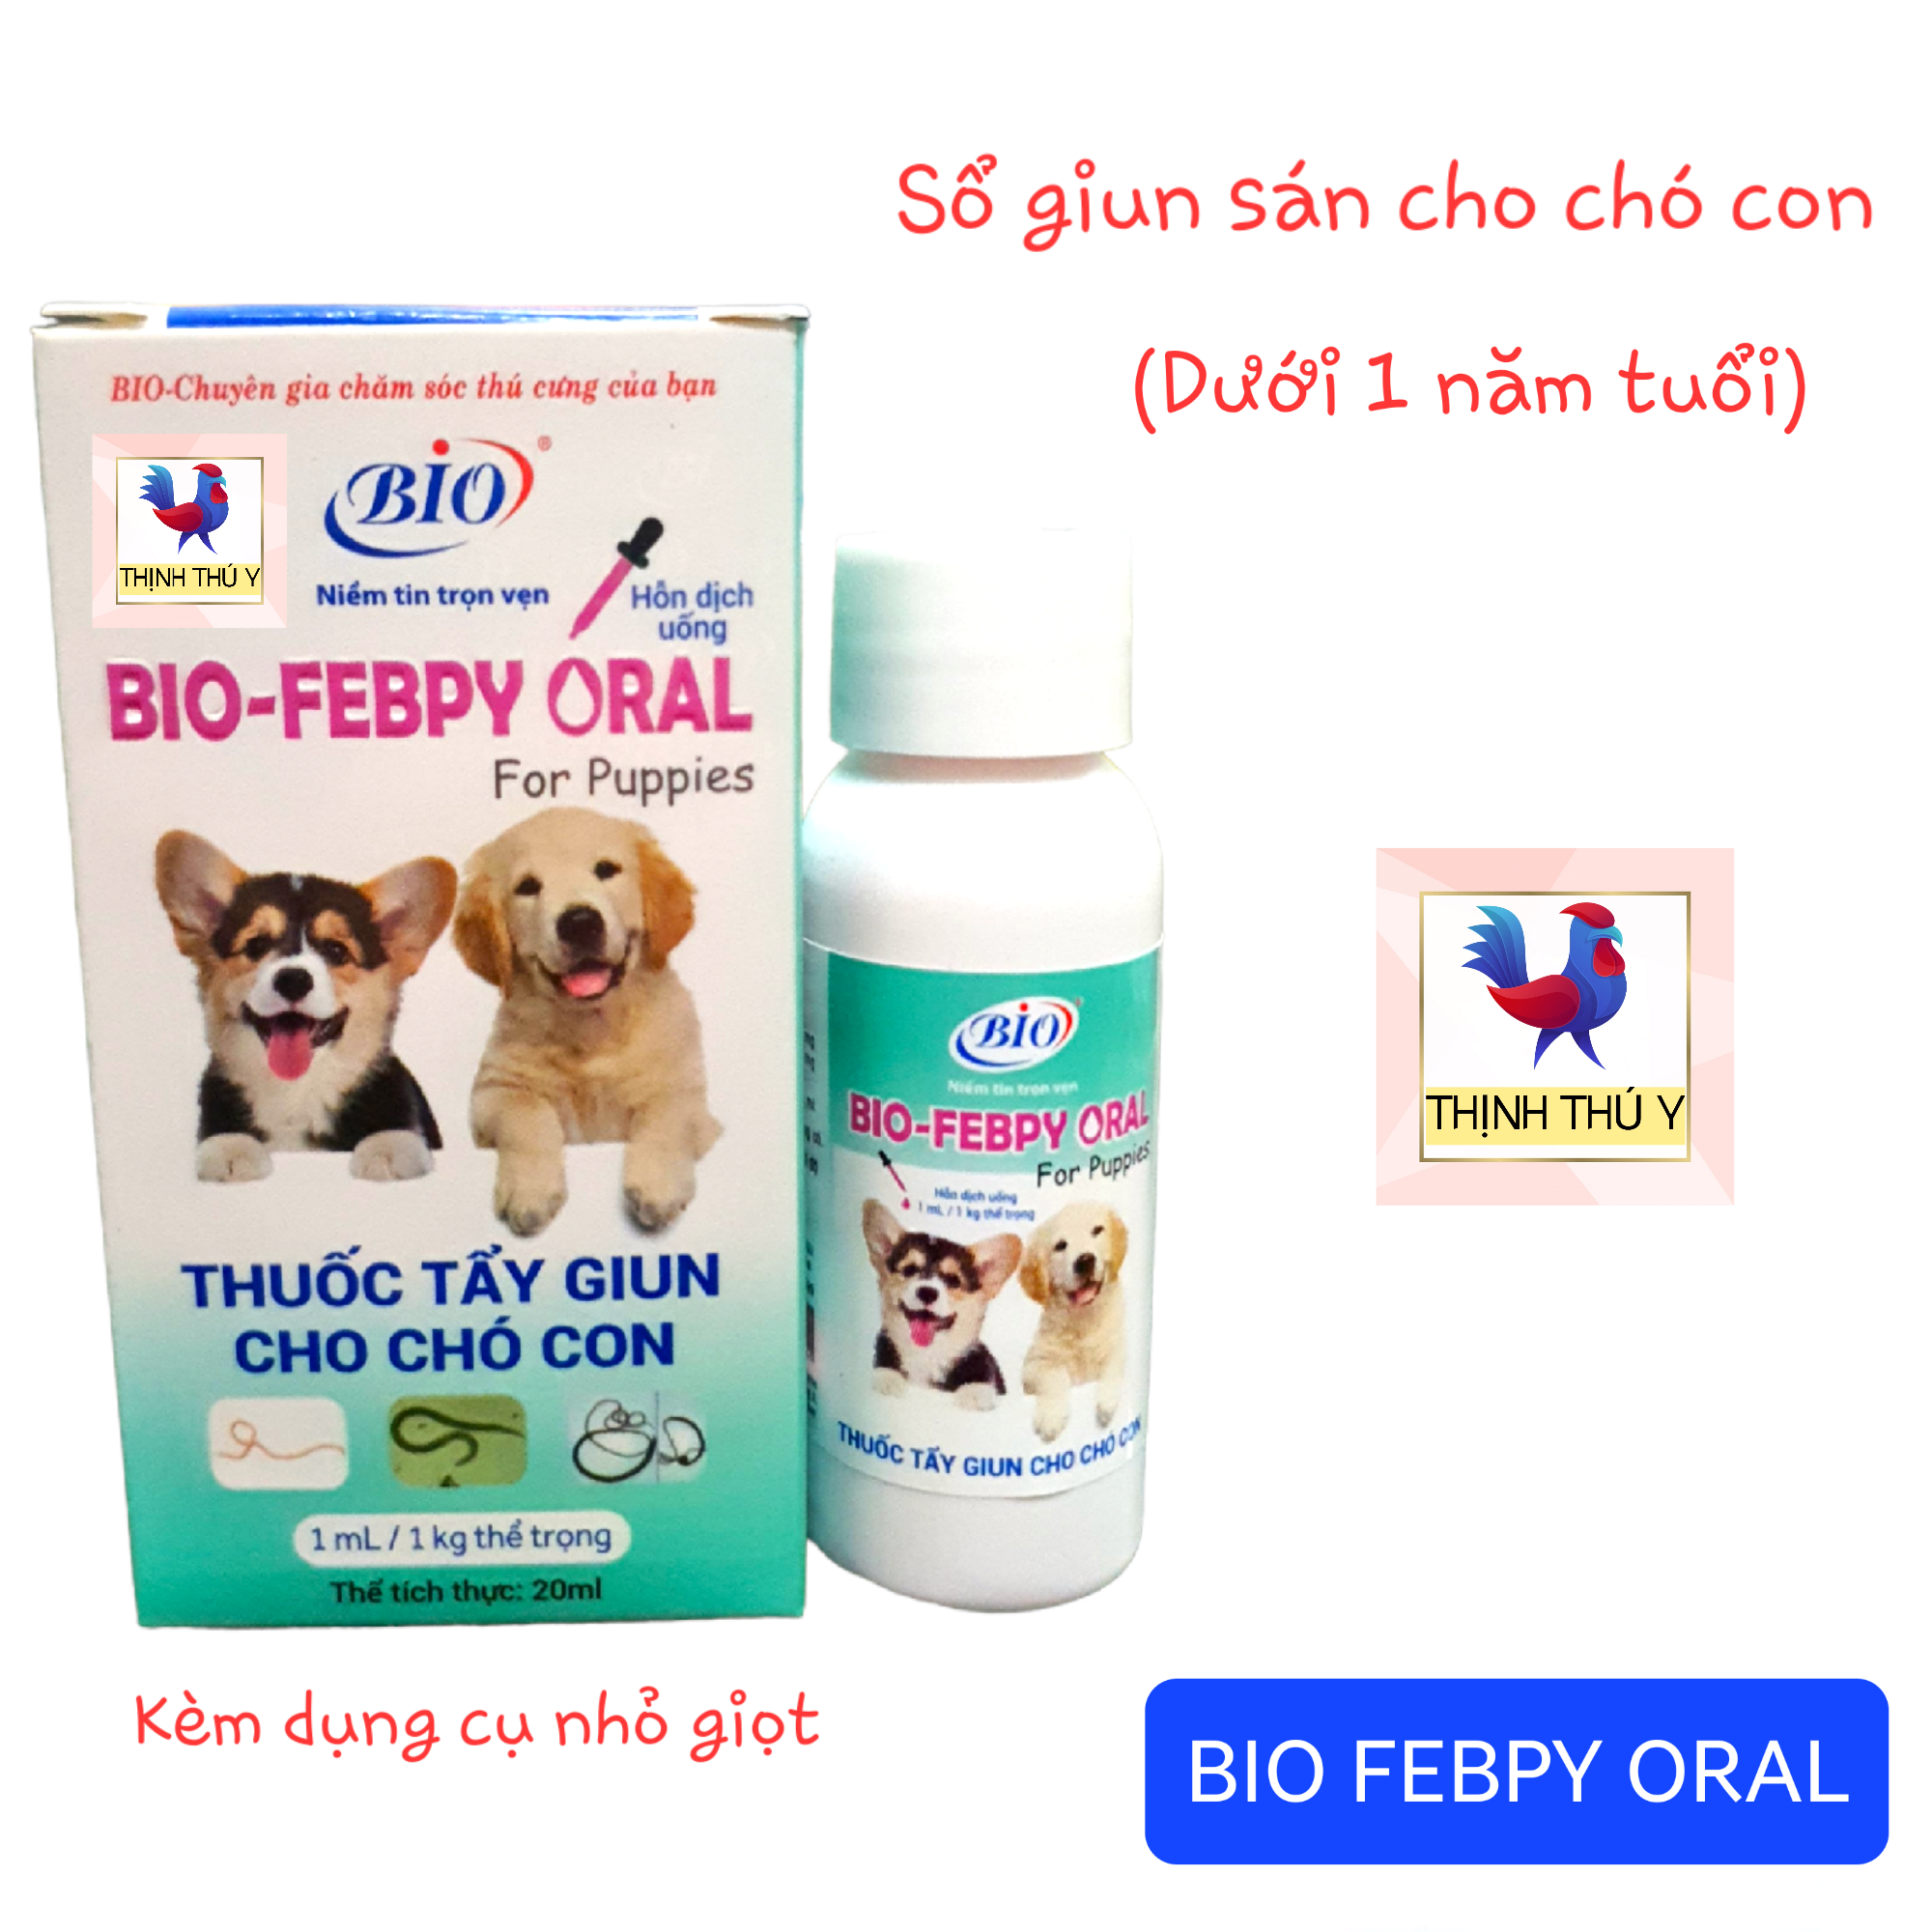 Bio FEBPY ORAL (20ml) - Sổ hầu hết các loại giun sán cho chó con (Dưới 1 năm tuổi)